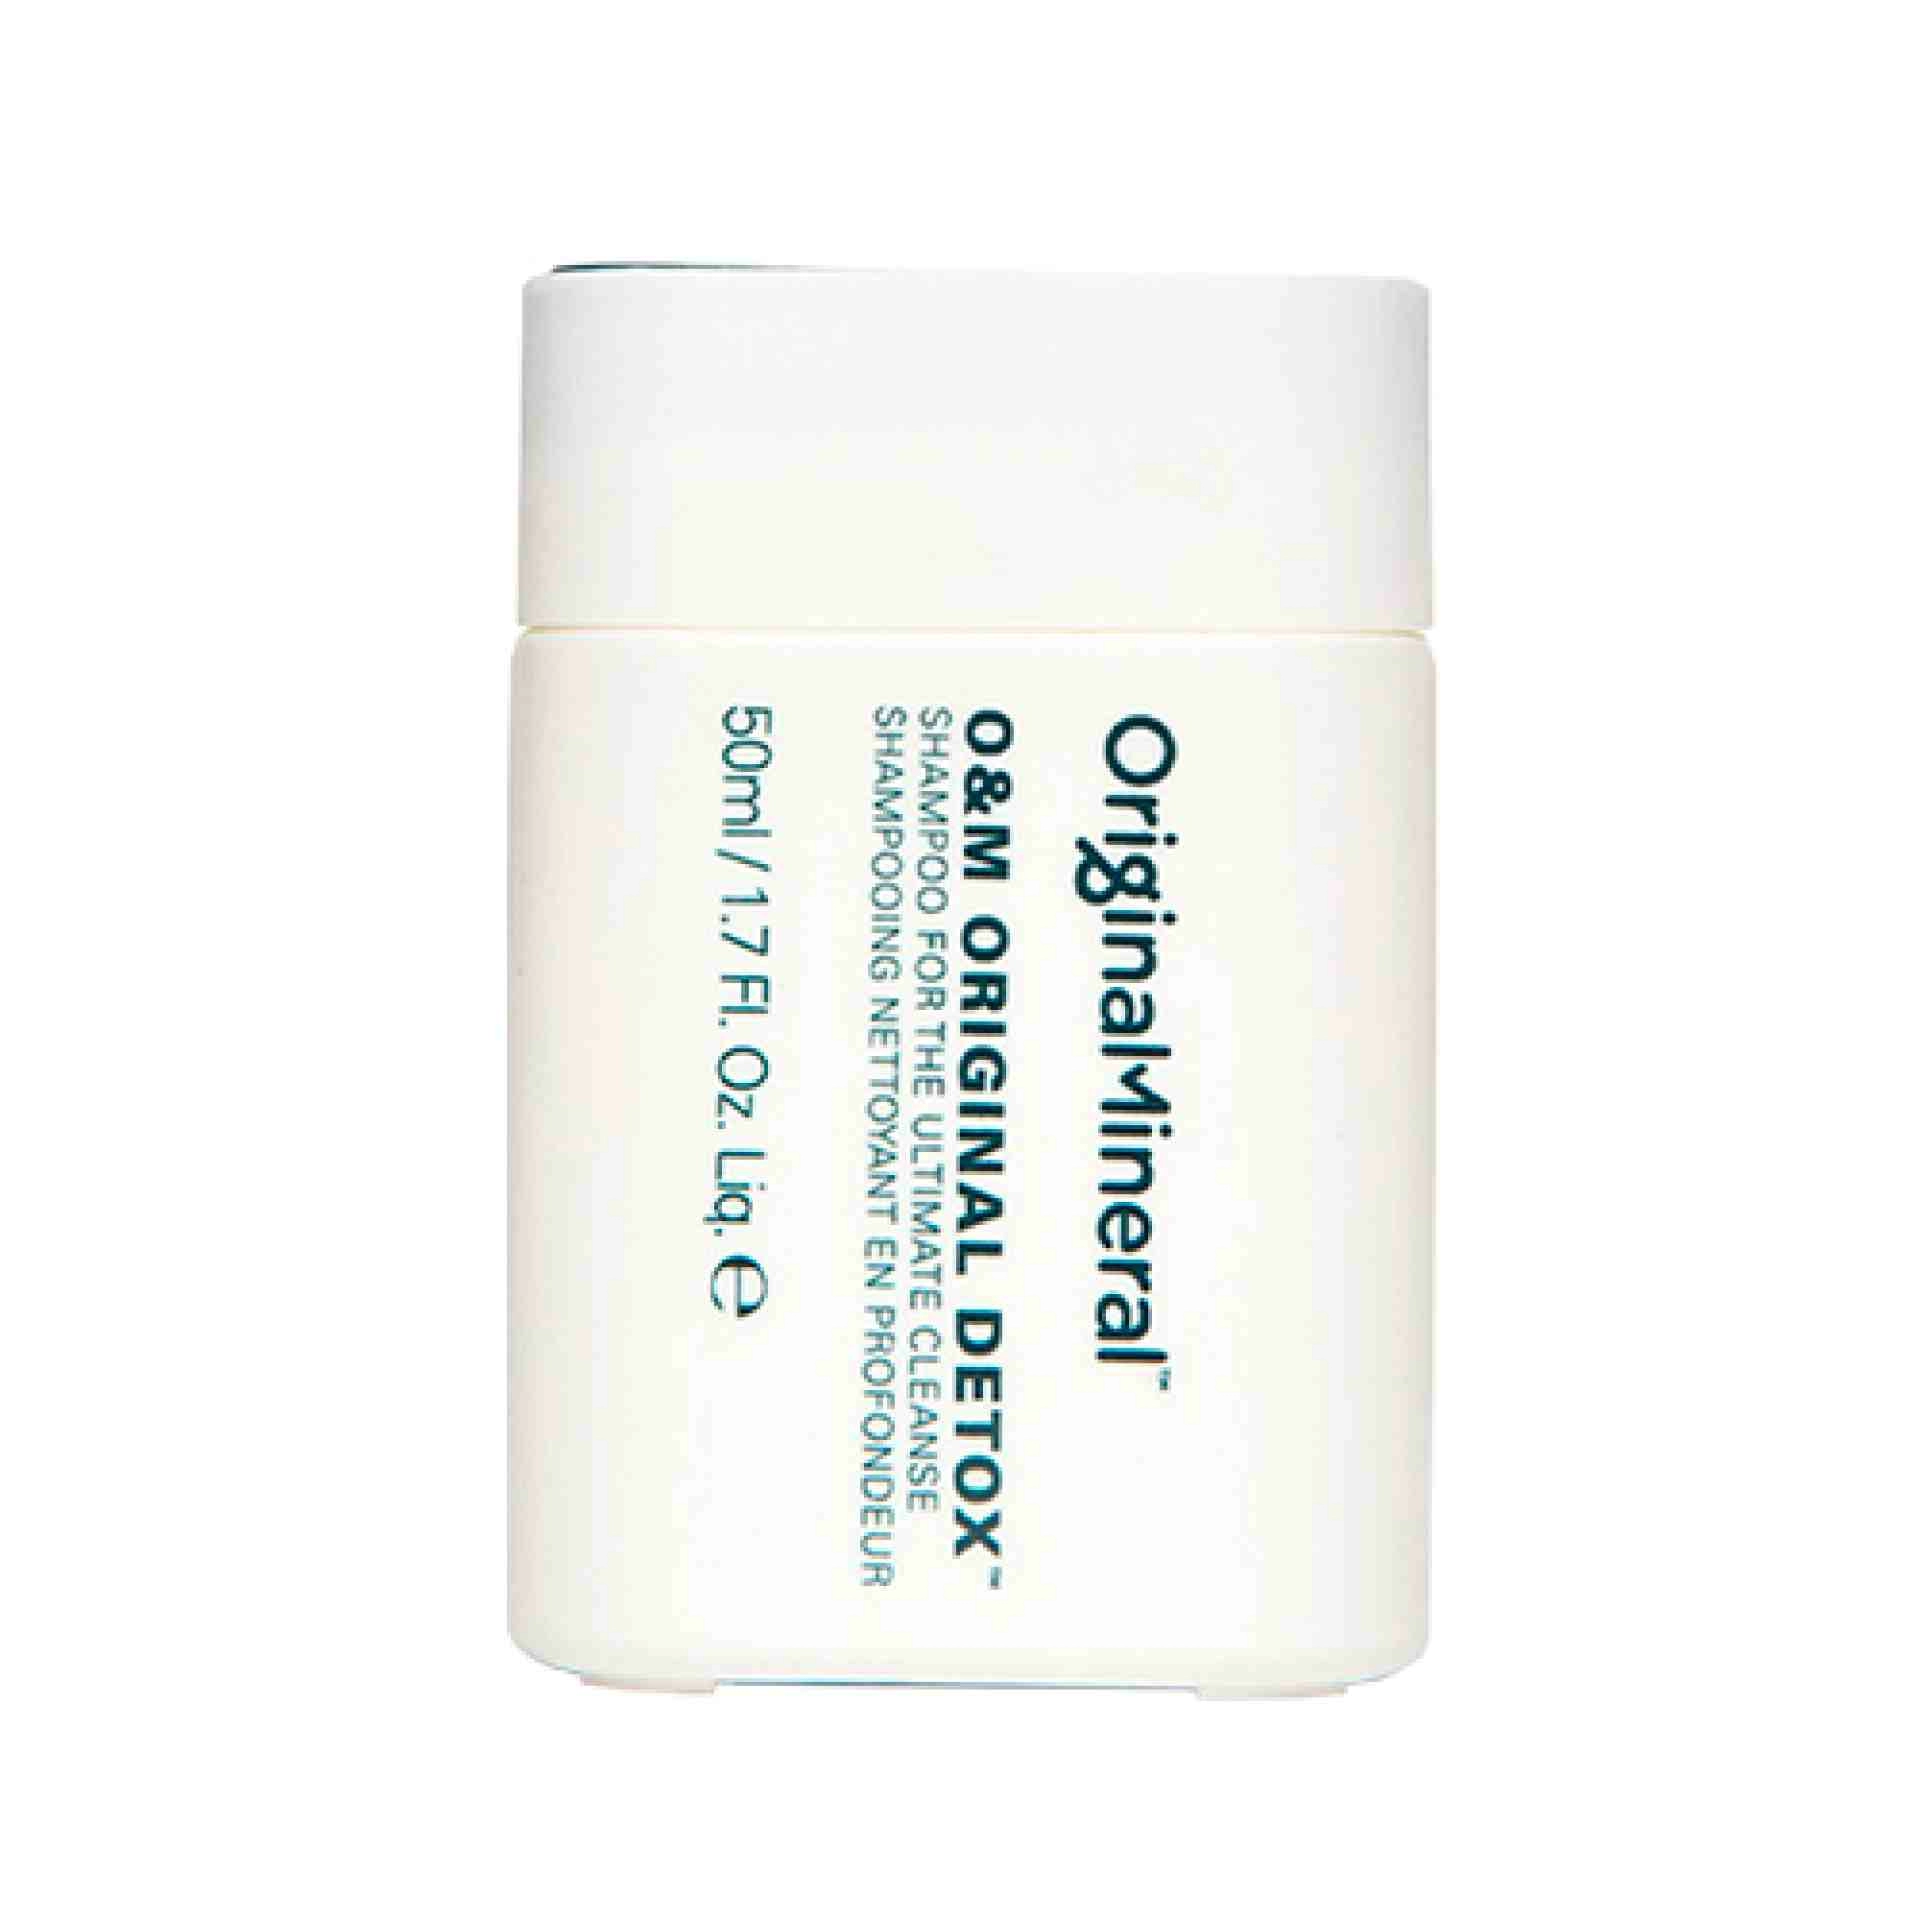 Original Detox Champú | Champú de limpieza profunda - Haircare - O&M ®